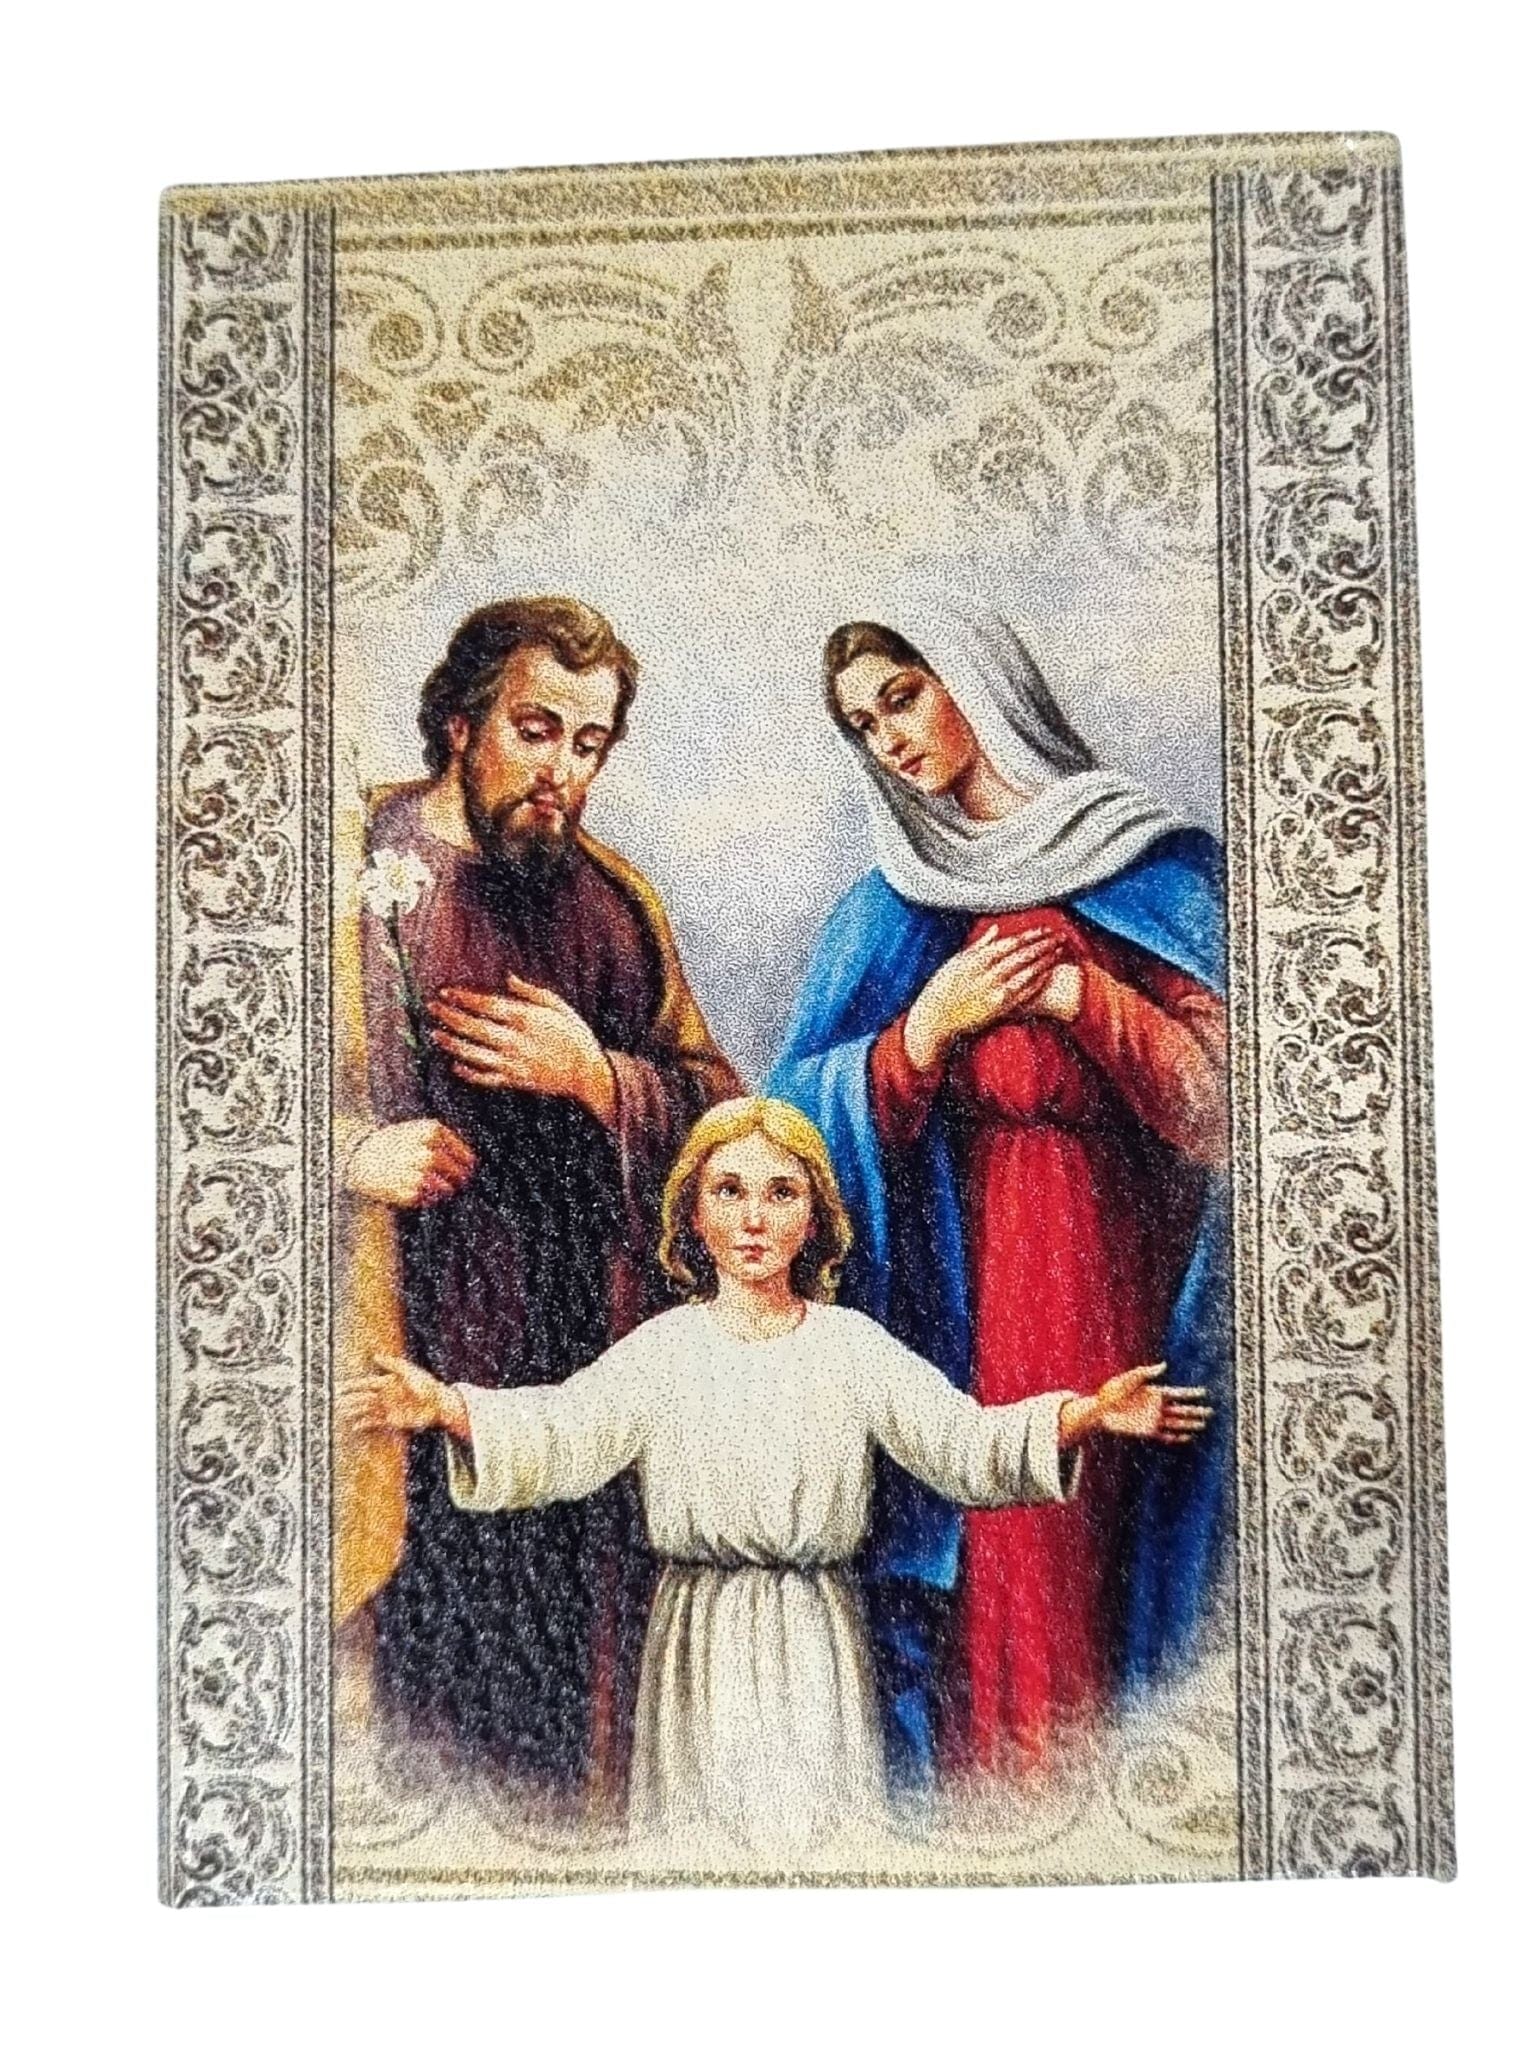 Porta Terço Italiano da Sagrada Família para Terço de até 8 mm-TerraCotta Arte Sacra